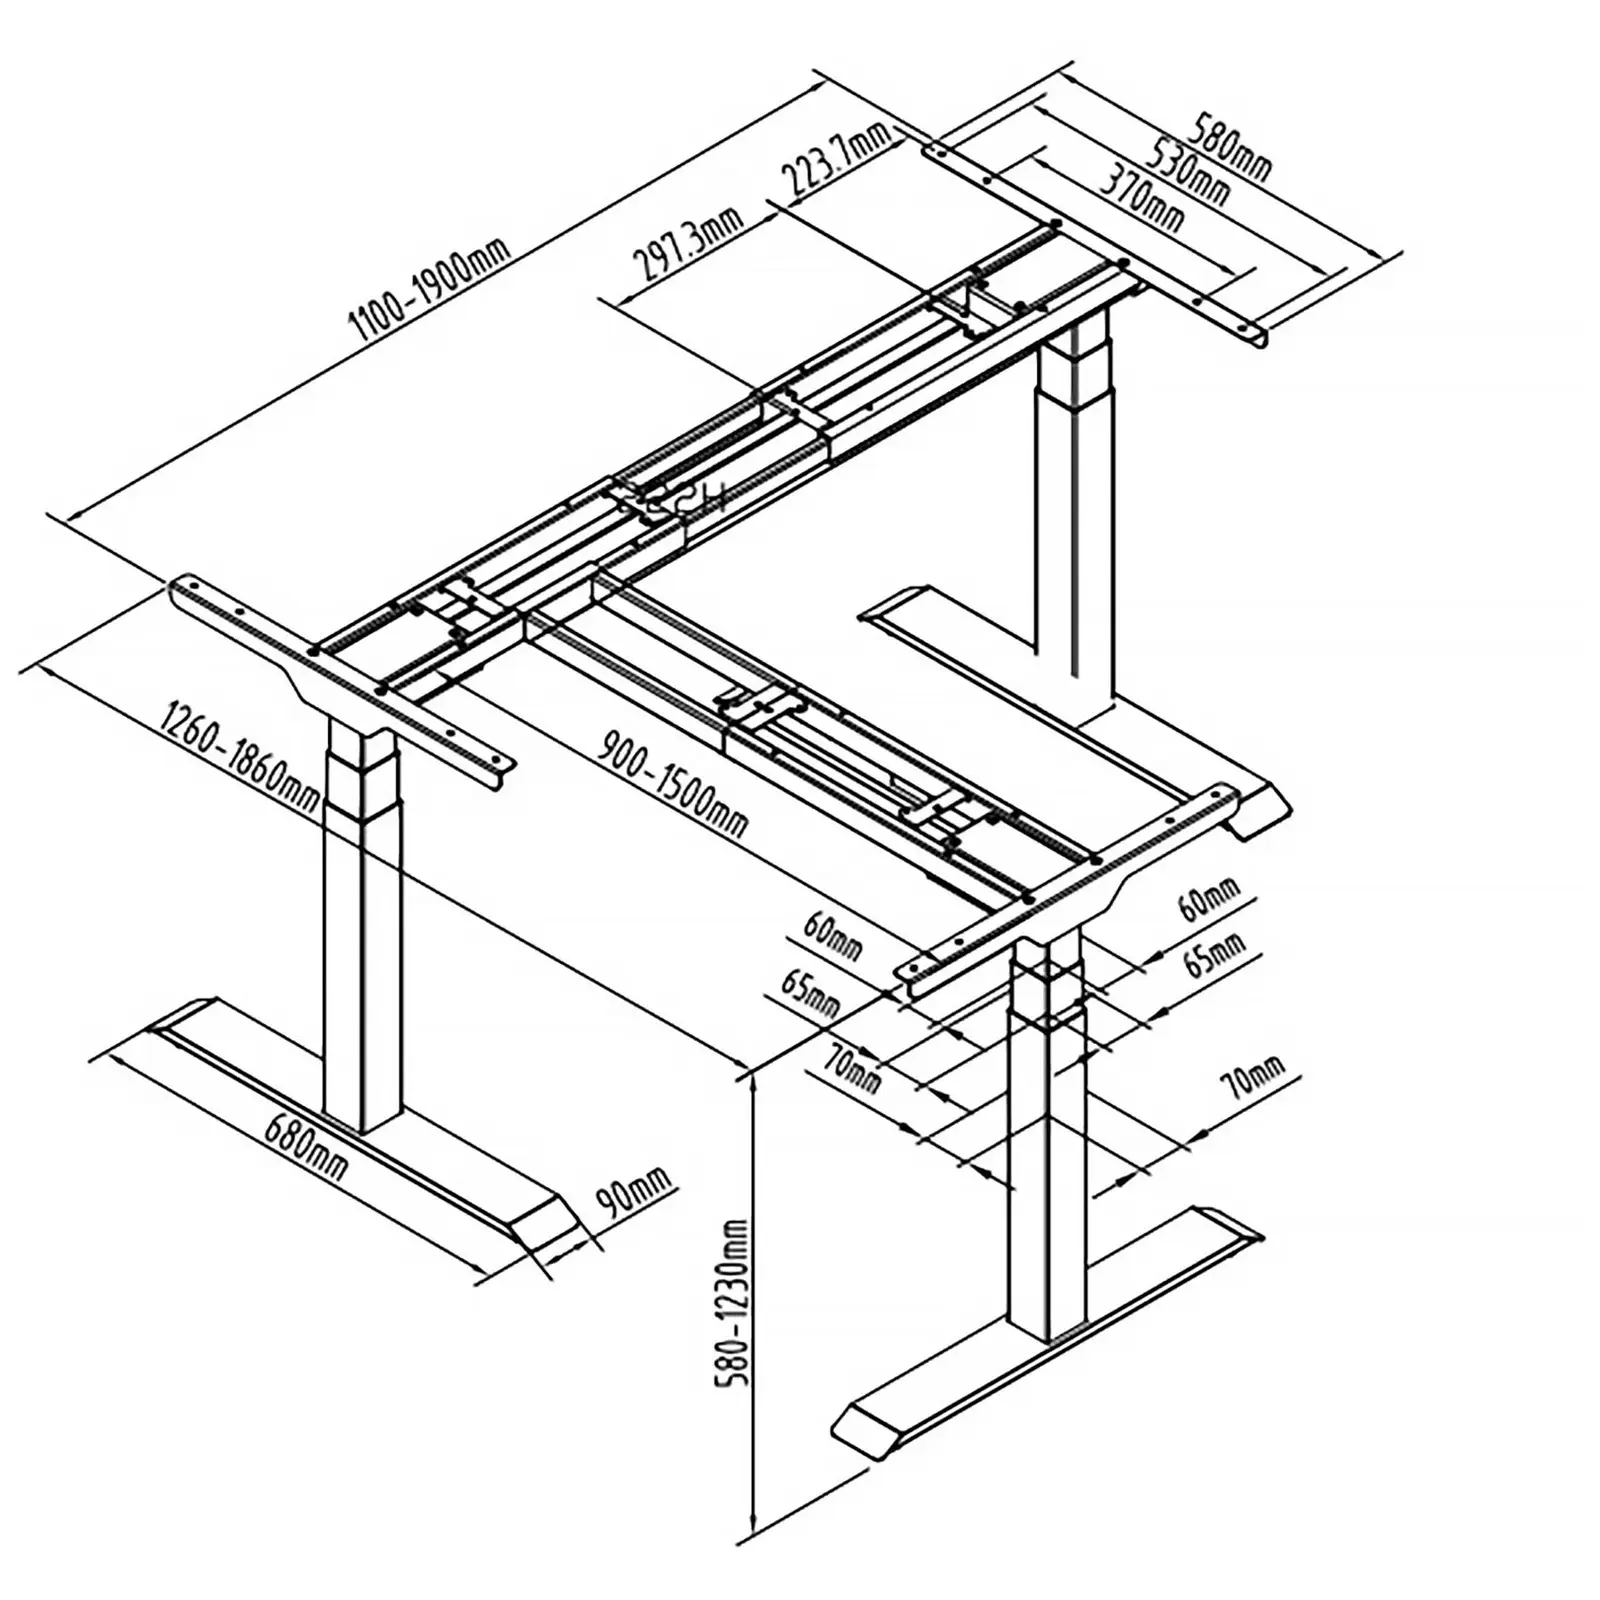 Supporto scrivania regolabile in altezza ad angolo - Altezza: 58-123 cm - Larghezza 90-150 cm (sinistra) / 110-190 cm (destra) - Angolo: 90° - 150 kg